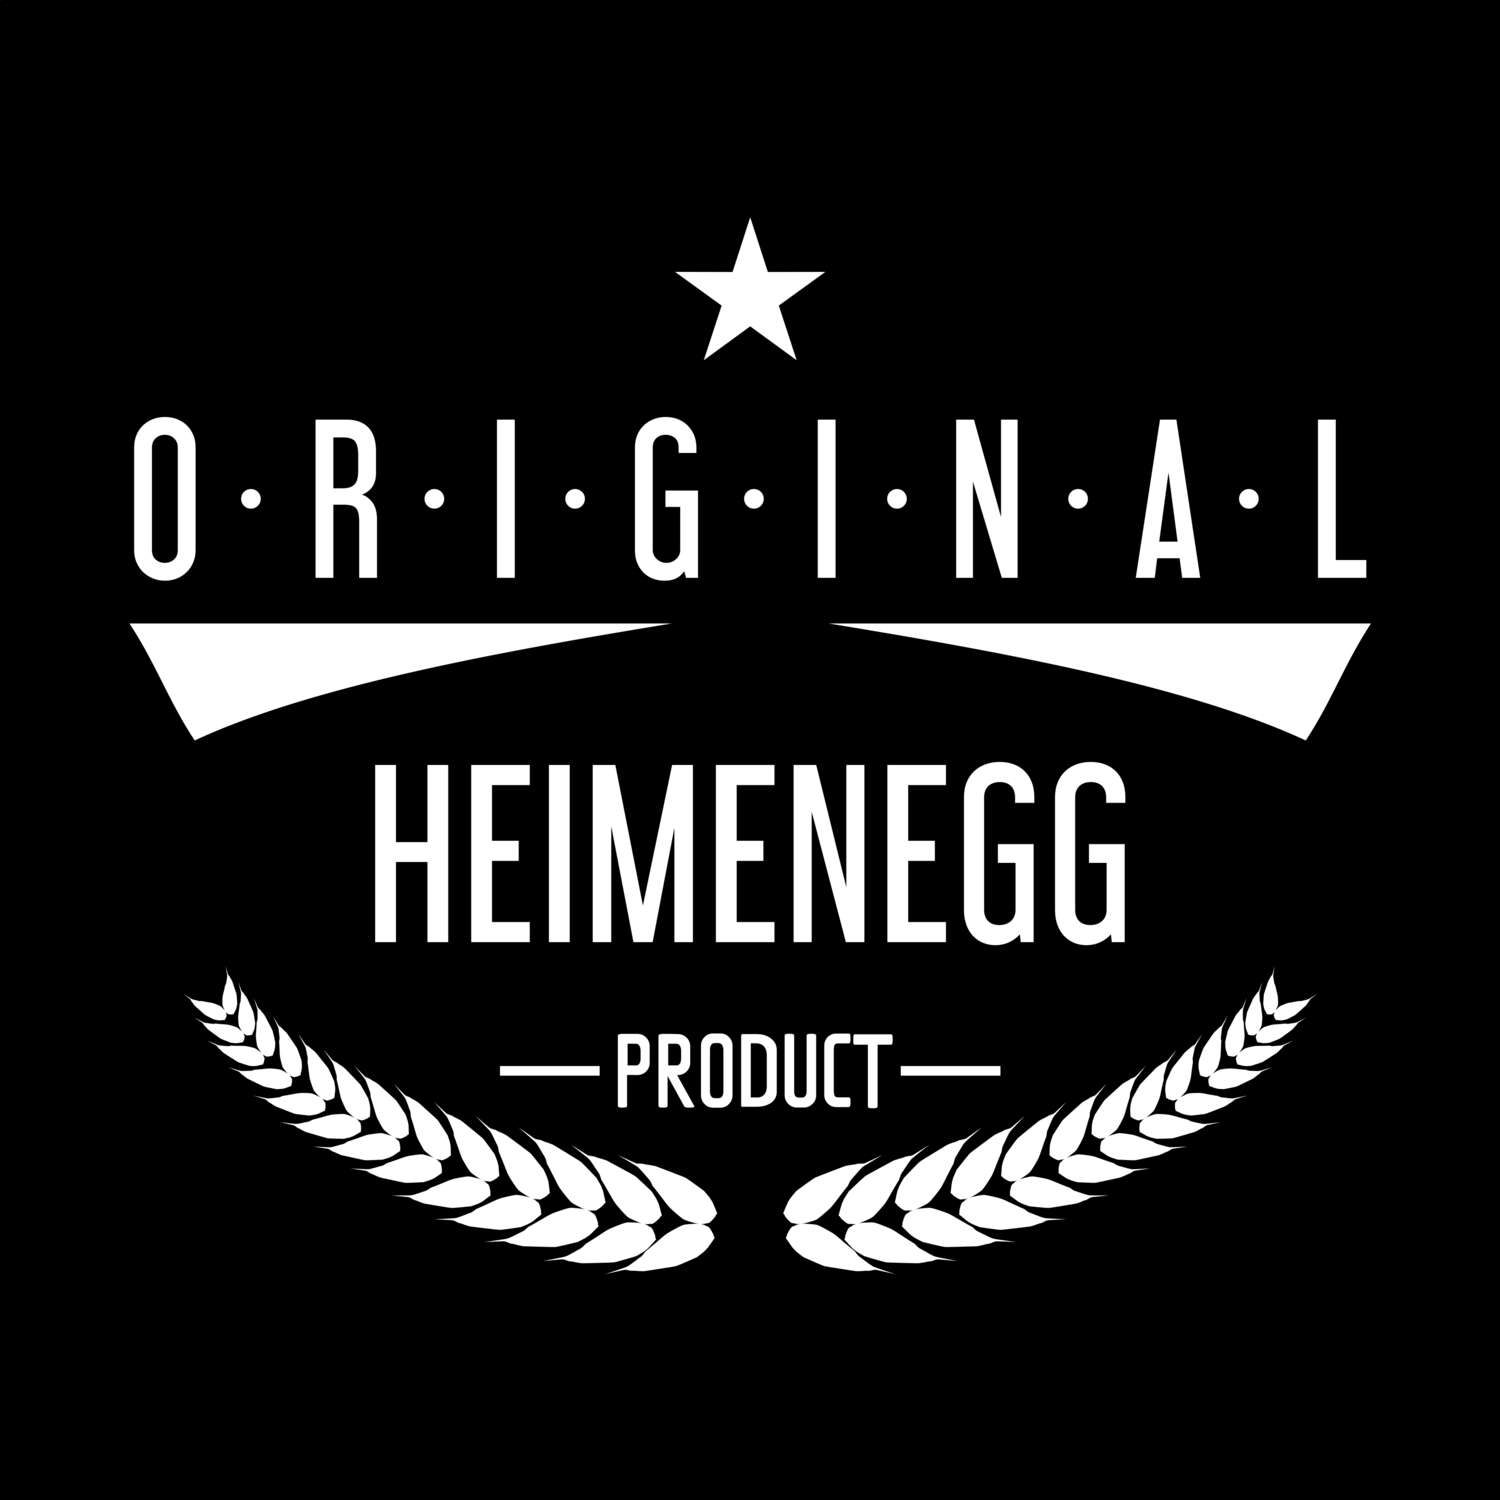 Heimenegg T-Shirt »Original Product«